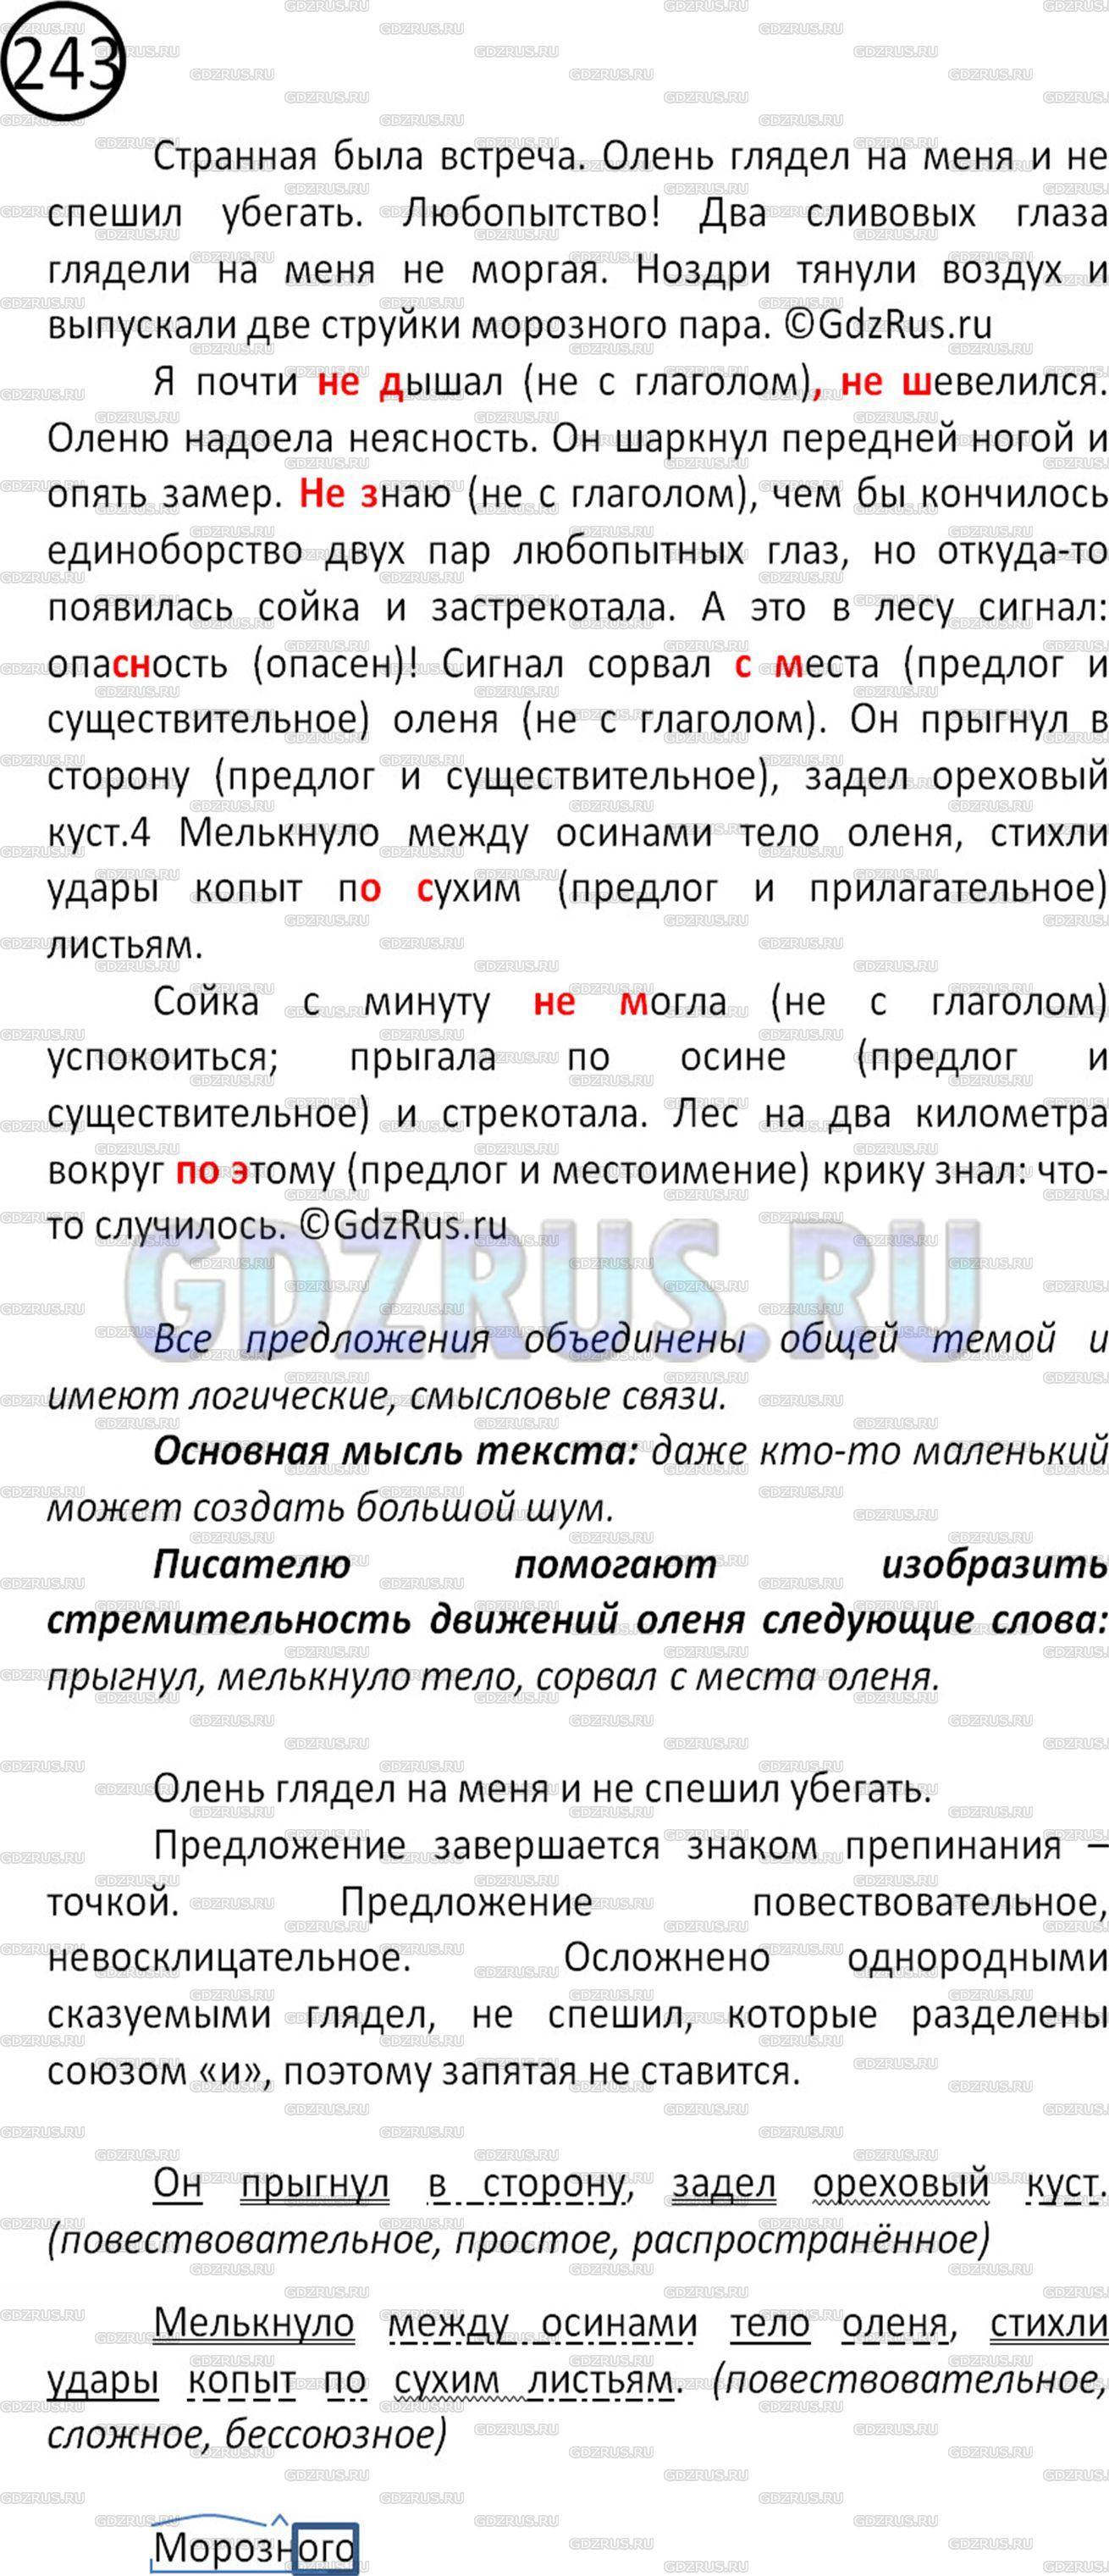 Фото решения 2: Номер №243 из ГДЗ по Русскому языку 5 класс: Ладыженская Т.А. 2012г.